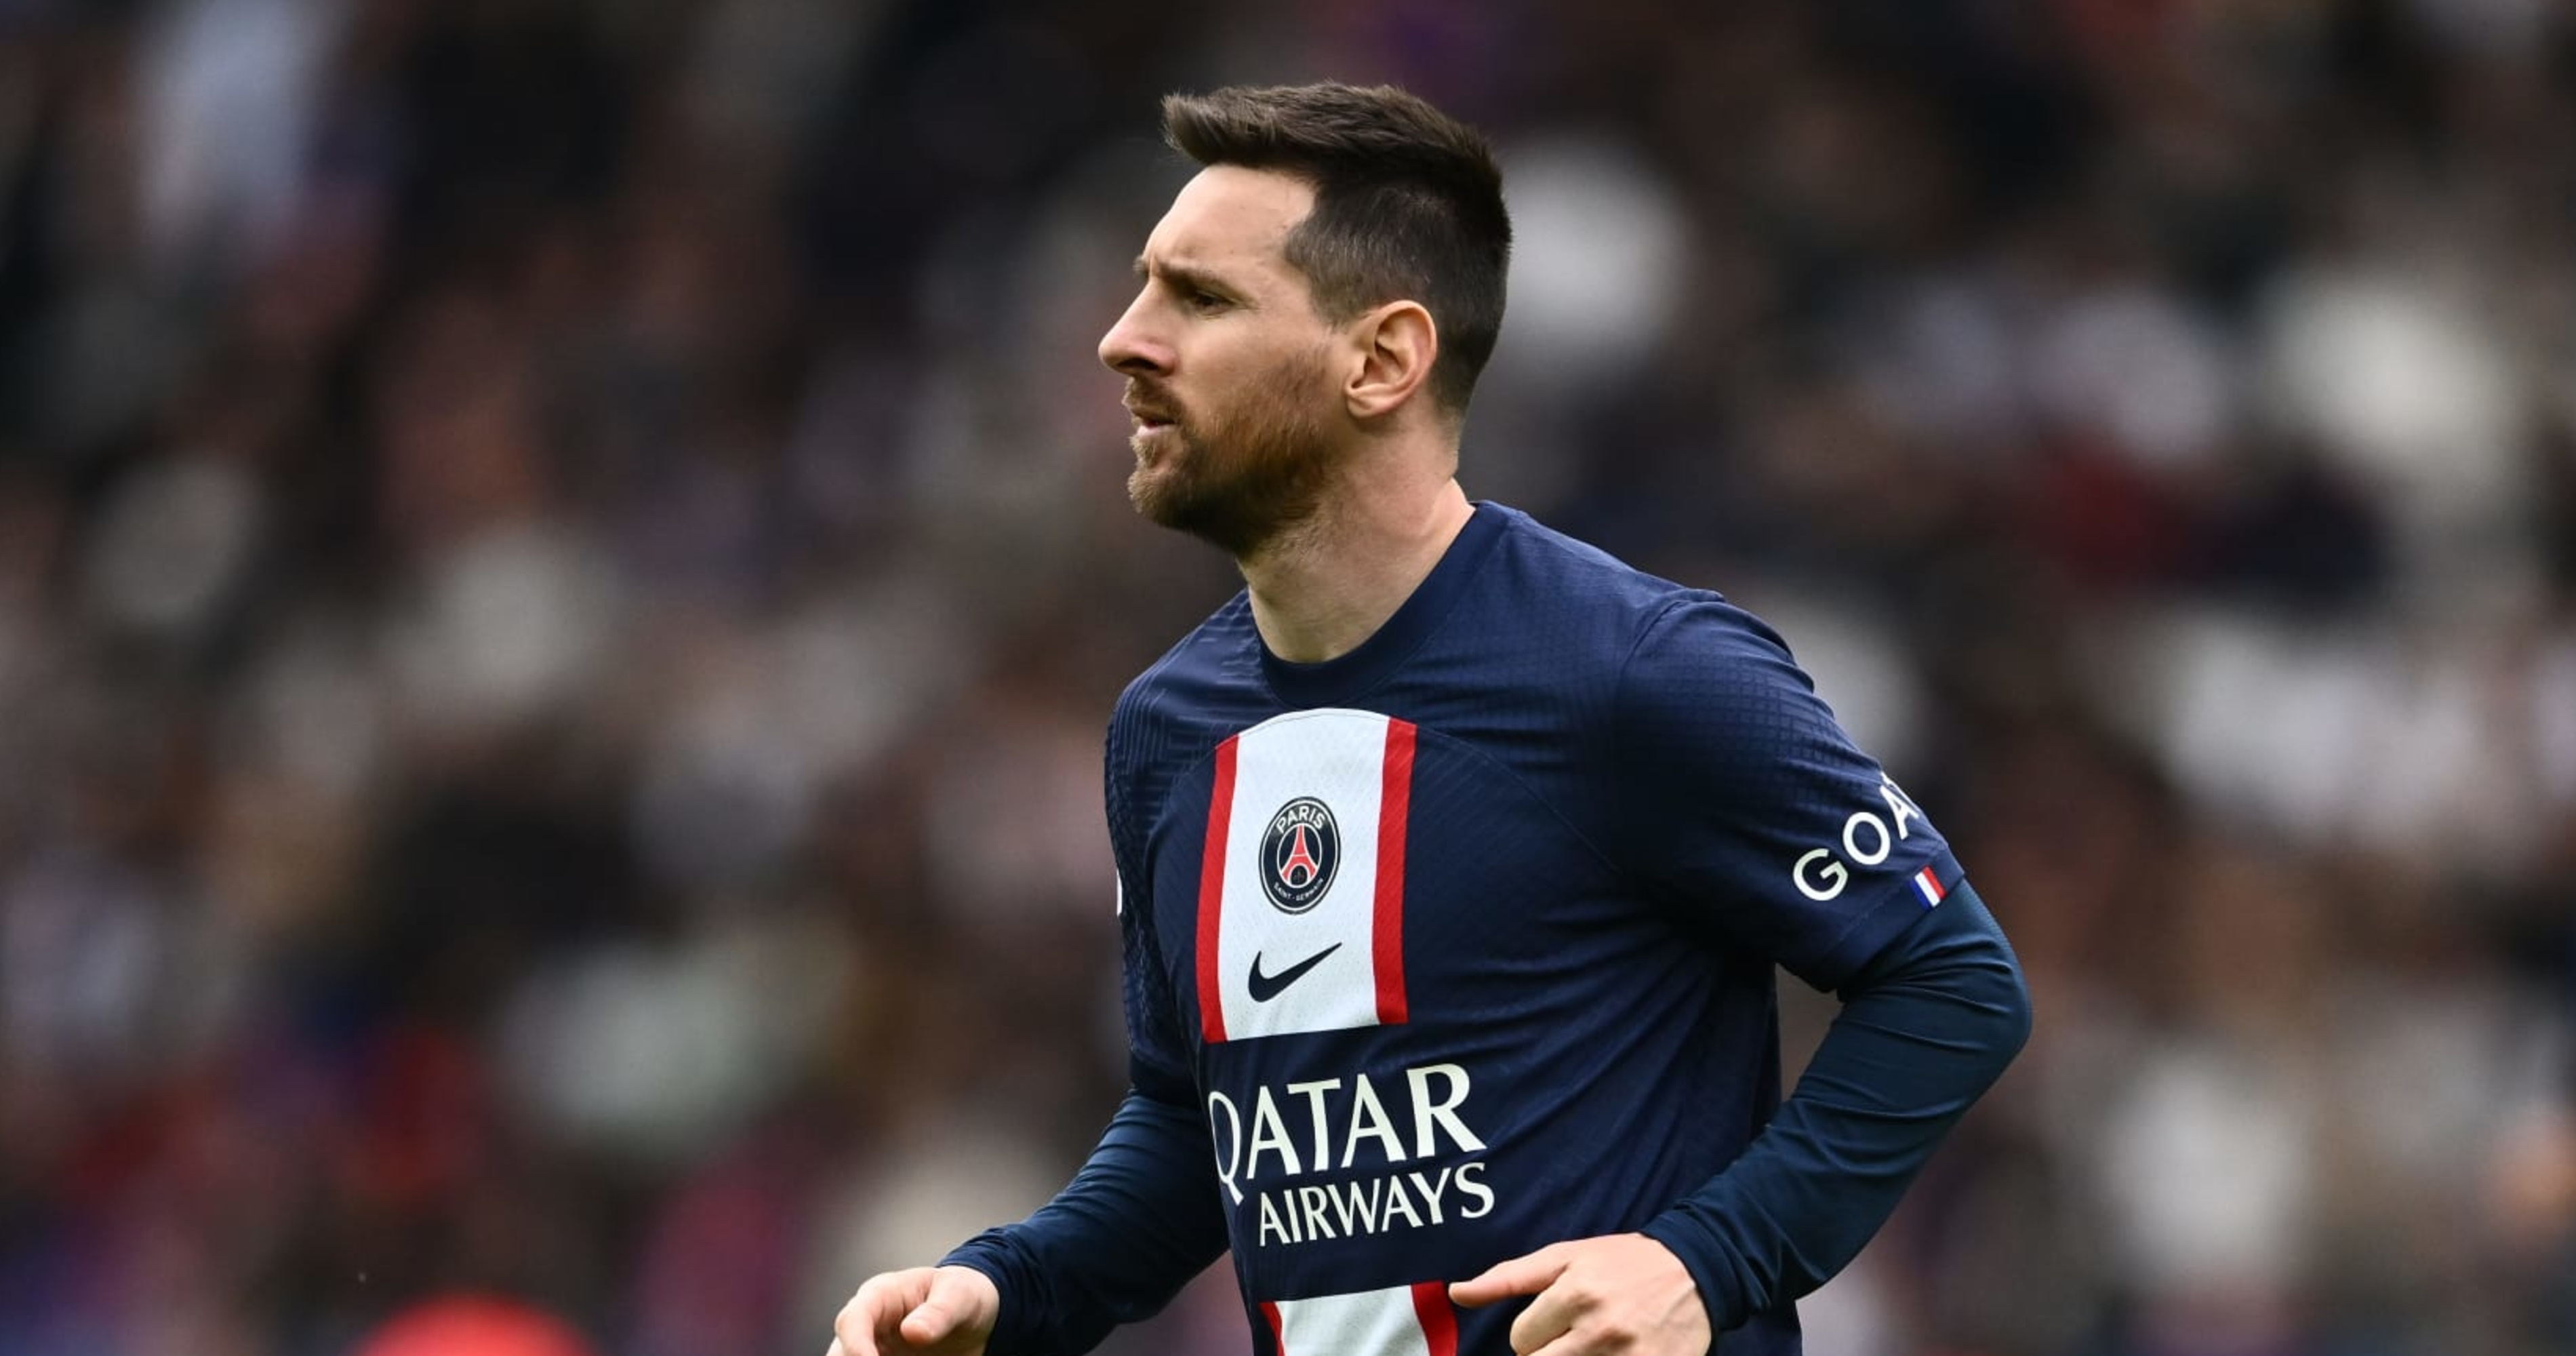 Report: Messi leaving Paris Saint-Germain at end of season